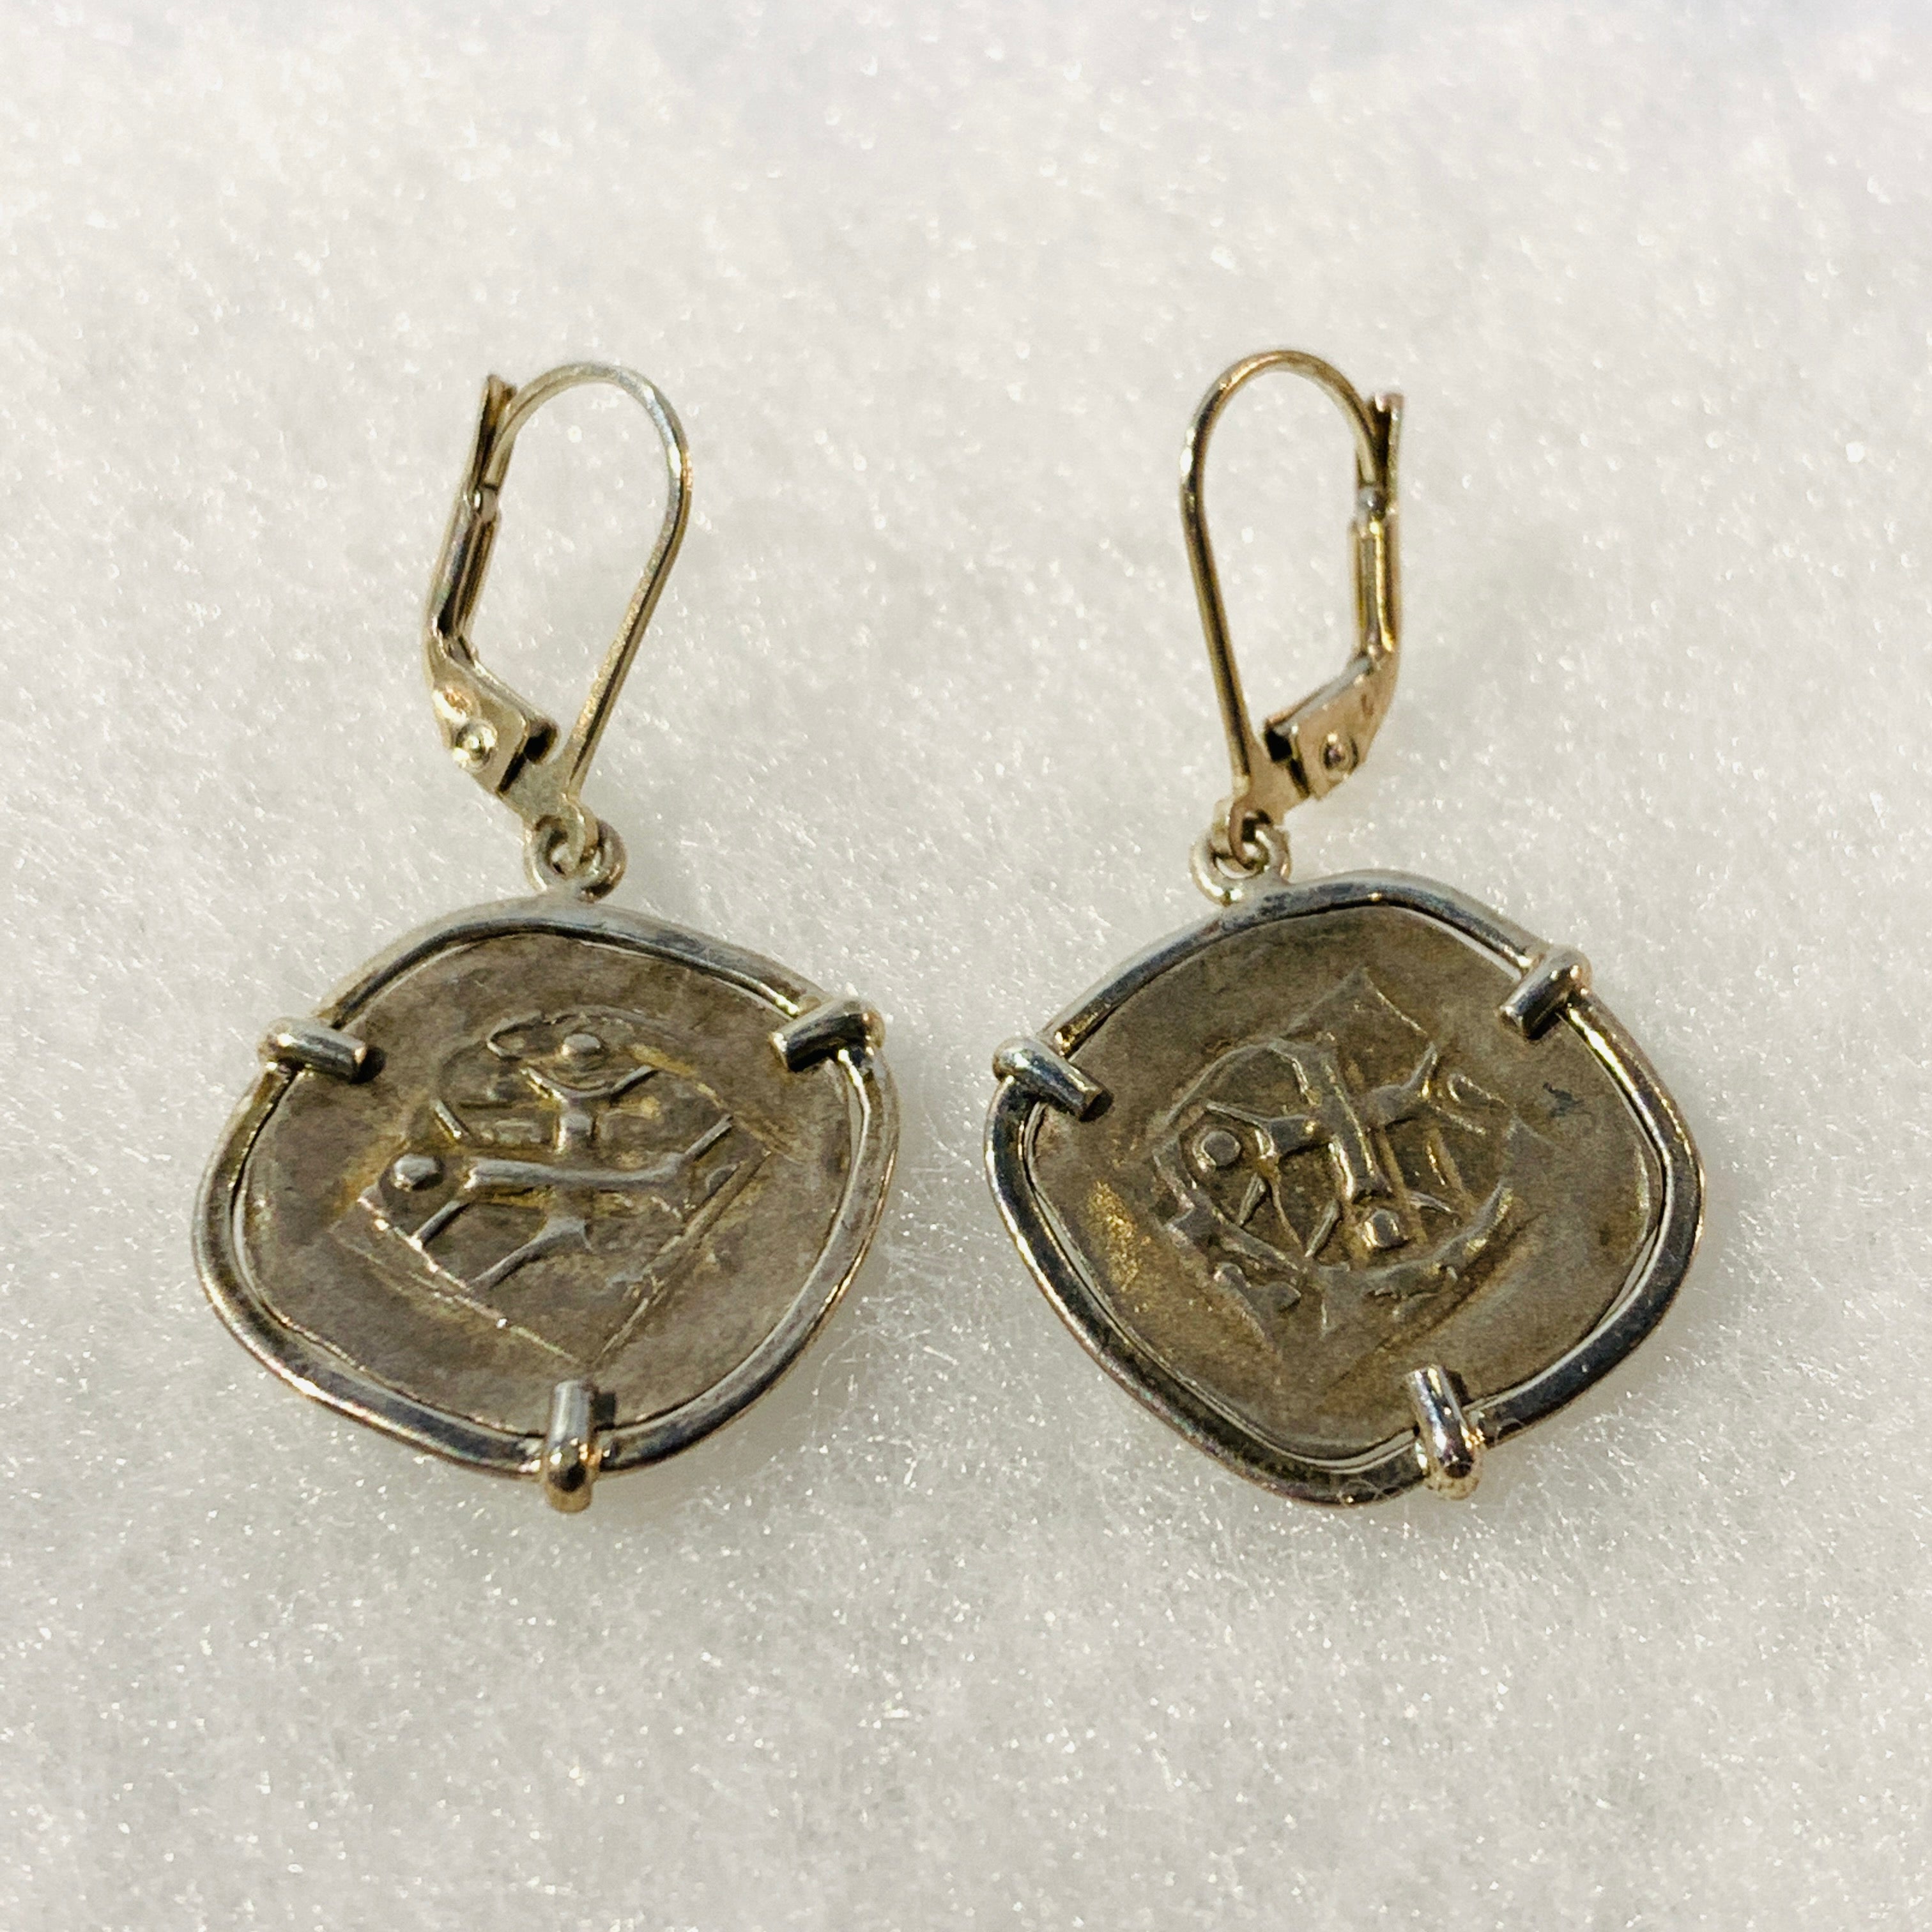 Handelsheller Medieval Silver Coin Earrings 1200-1300 AD